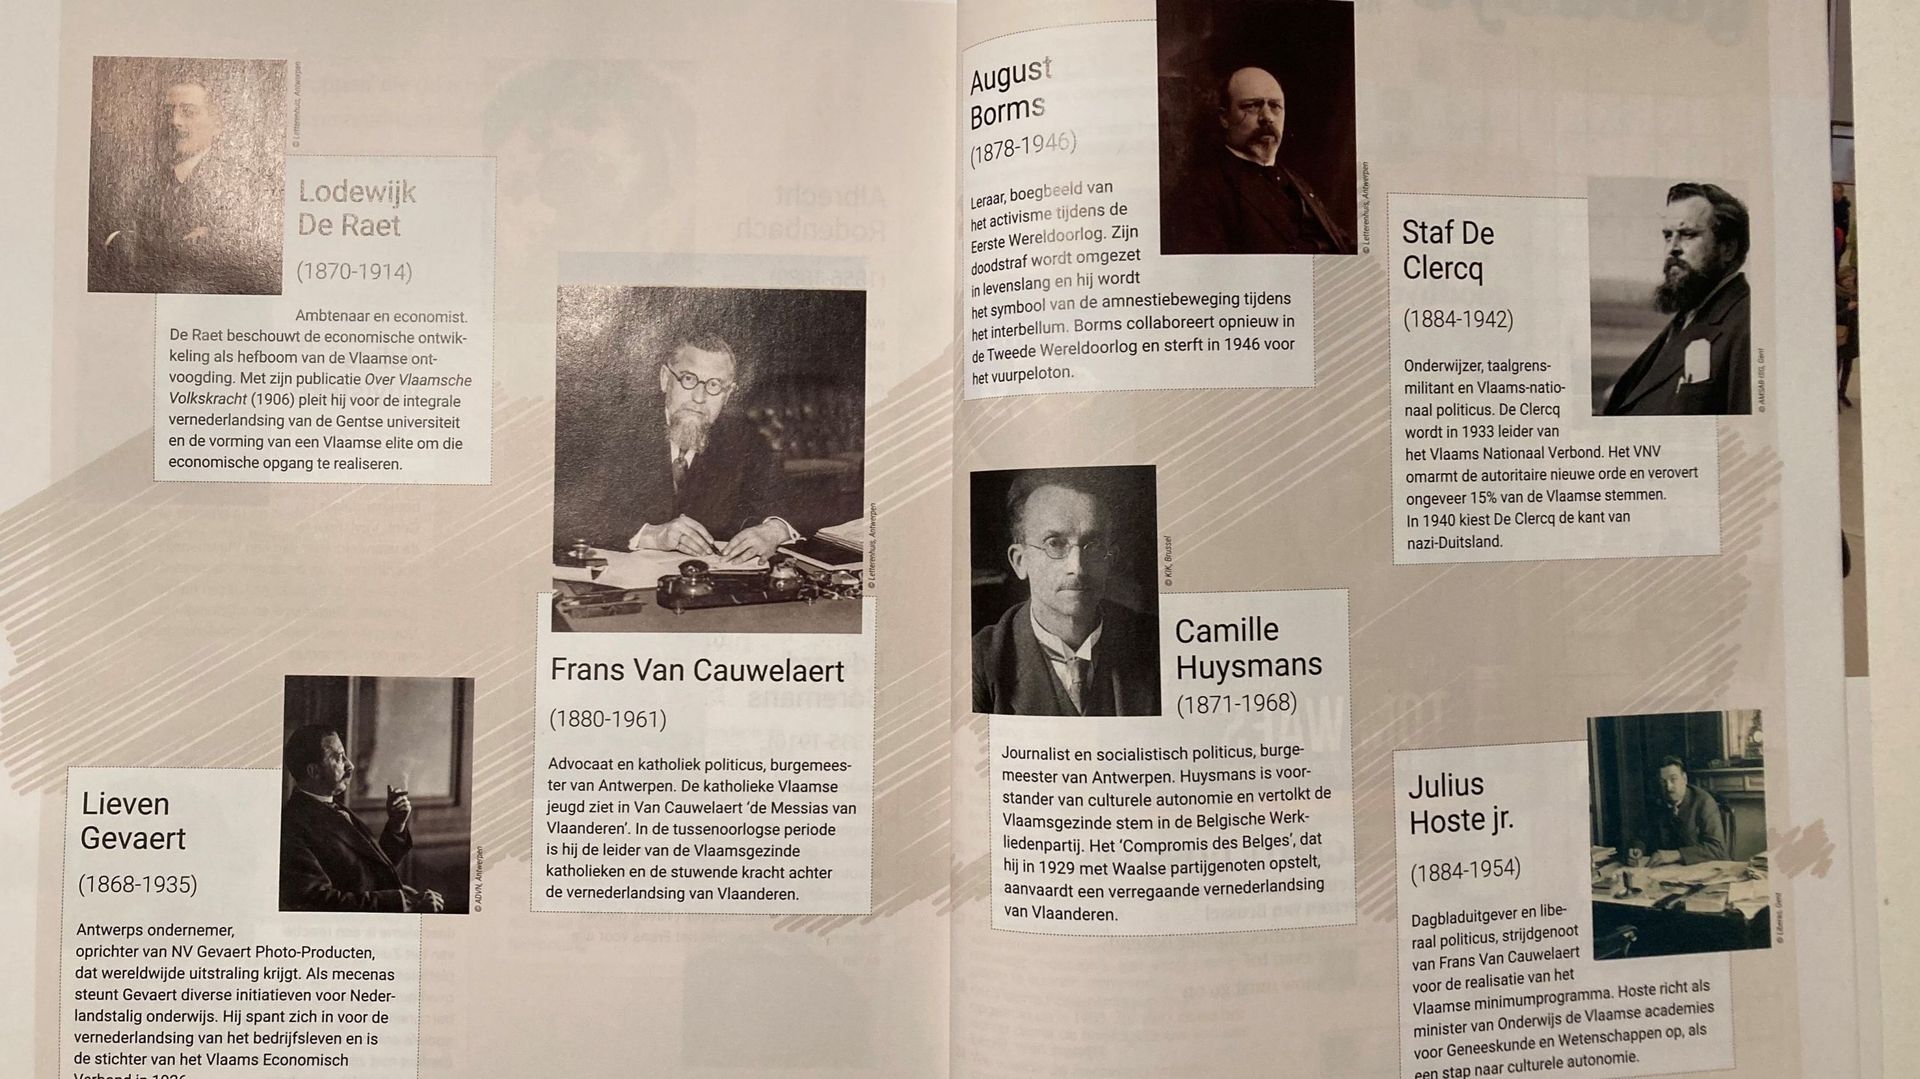 Pour ses 50 ans, le Parlement flamand met à l'honneur deux collaborateurs nazis dans une édition spéciale de Newsweek